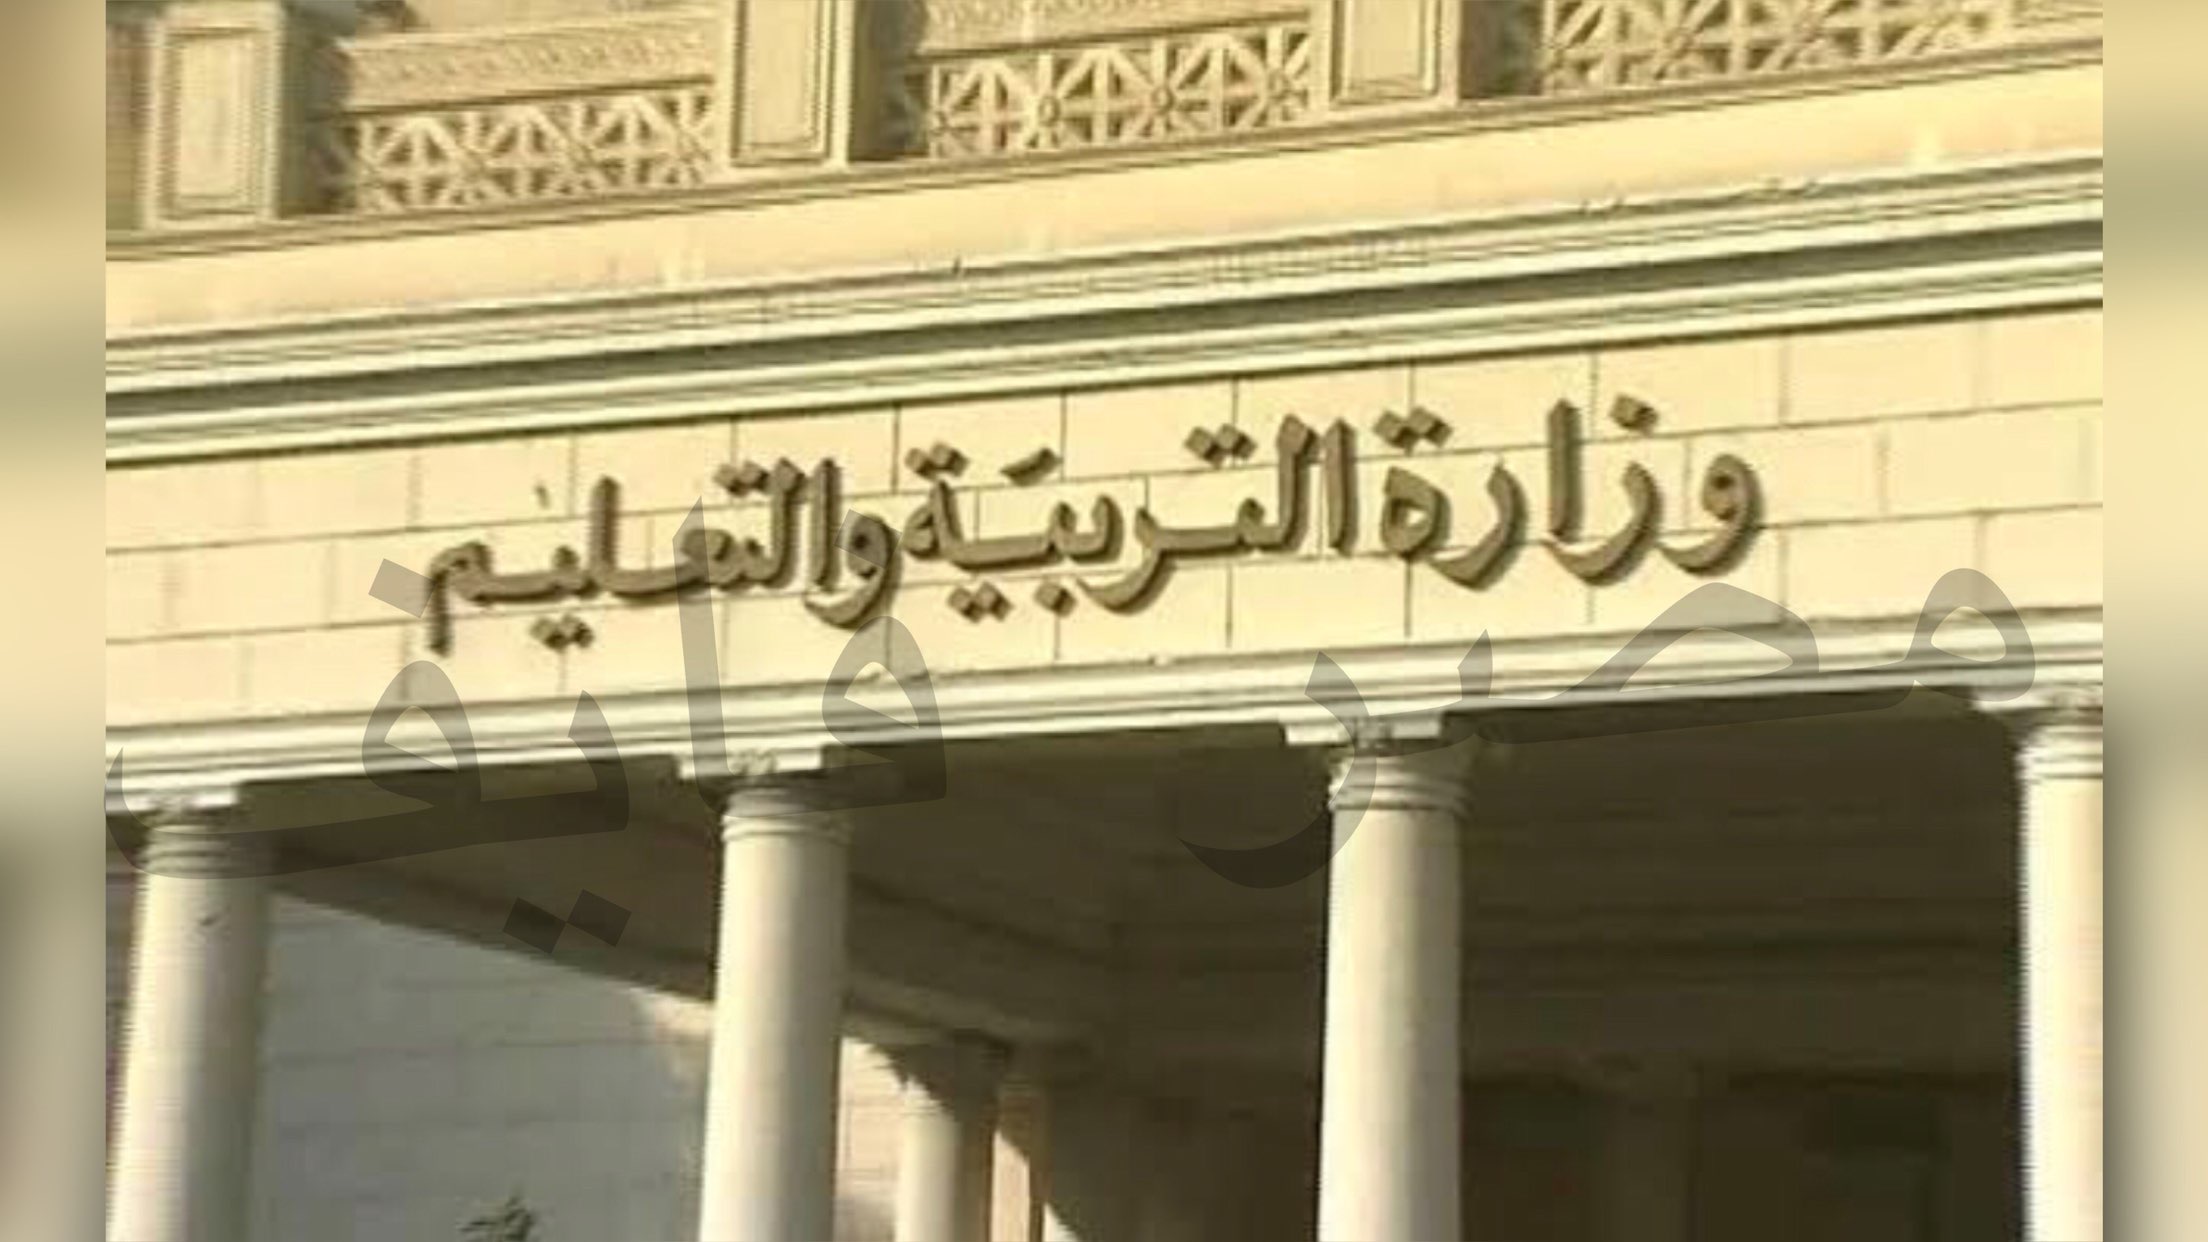 مدارس بعد الاعدادية بديلة للثانوية العامة في القاهرة الكبرى والمحافظات 2021